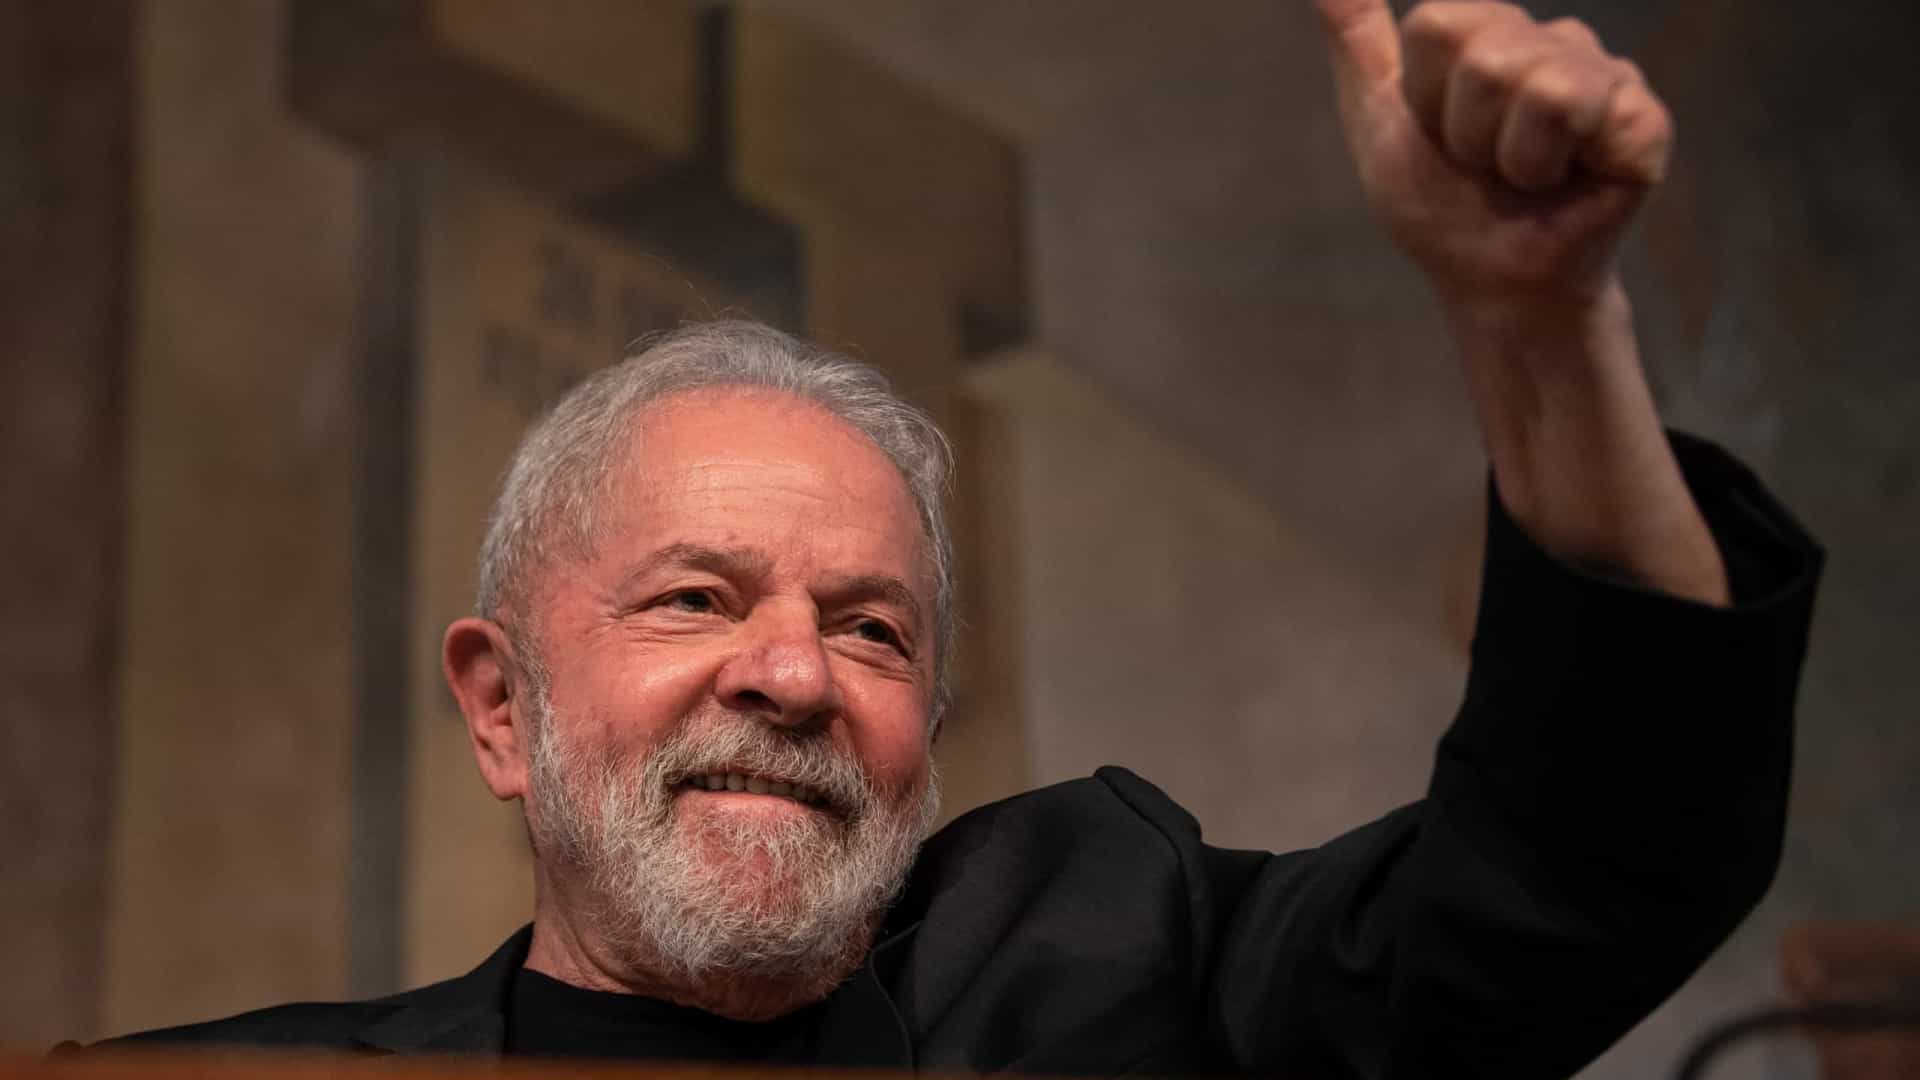 Guerra vira munição contra Bolsonaro e Lula e mobiliza presidenciáveis